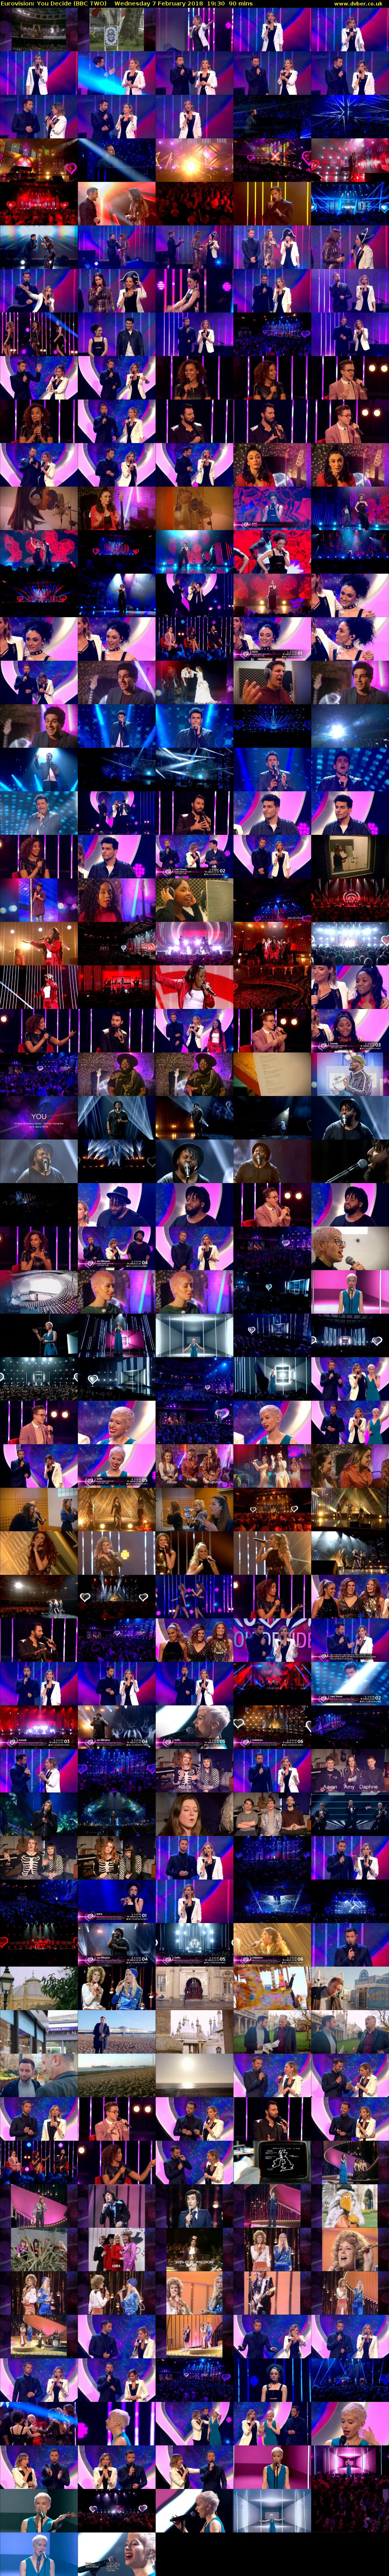 Eurovision: You Decide (BBC TWO) Wednesday 7 February 2018 19:30 - 21:00